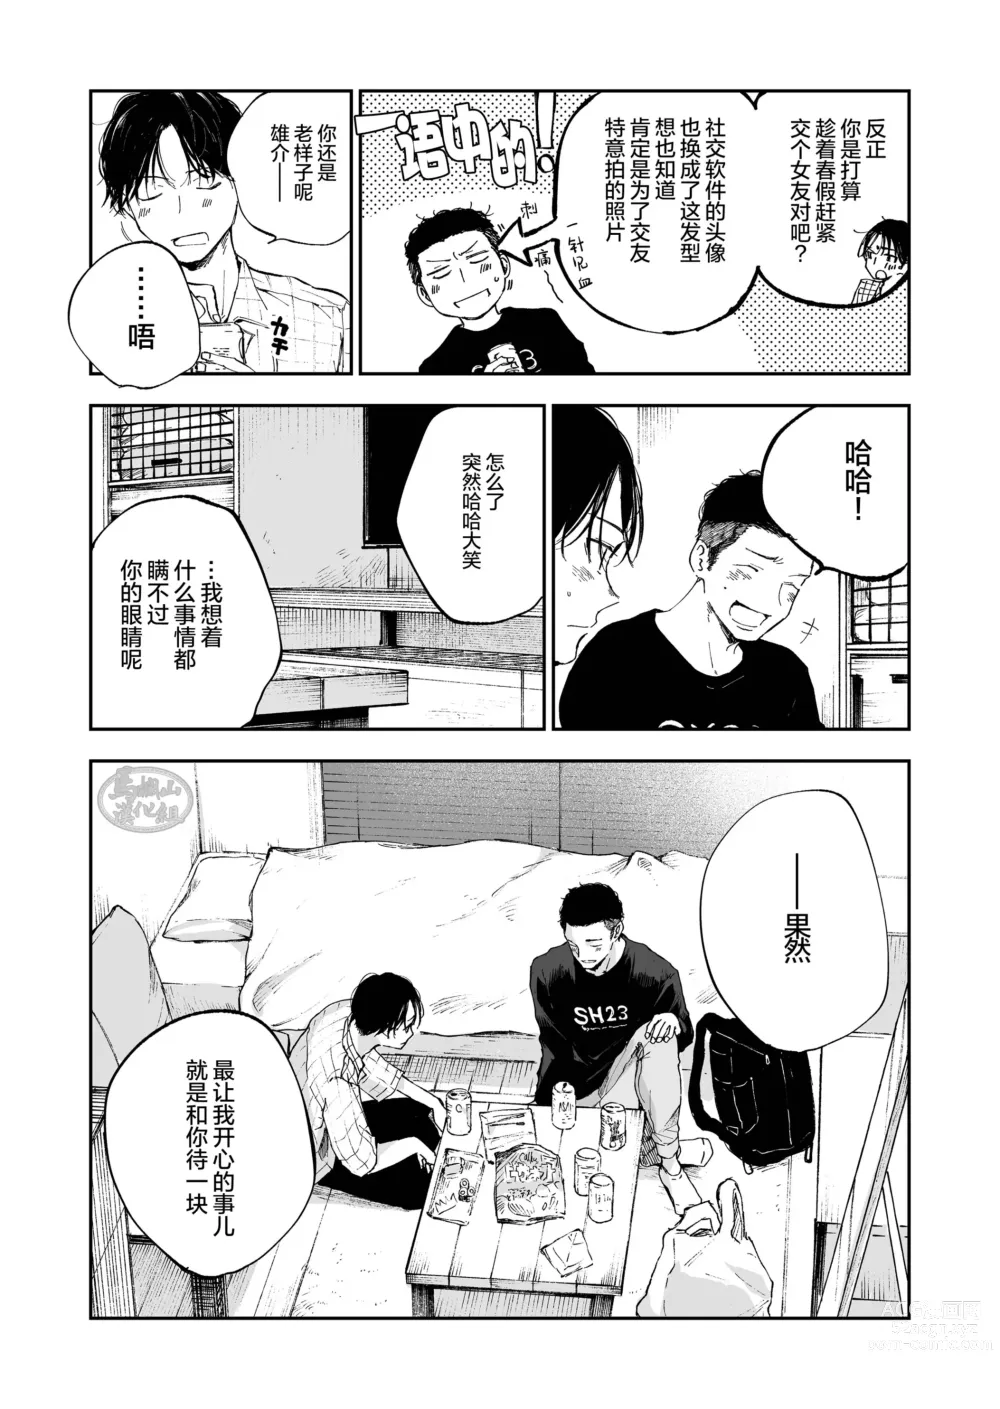 Page 6 of manga キミは ともだち